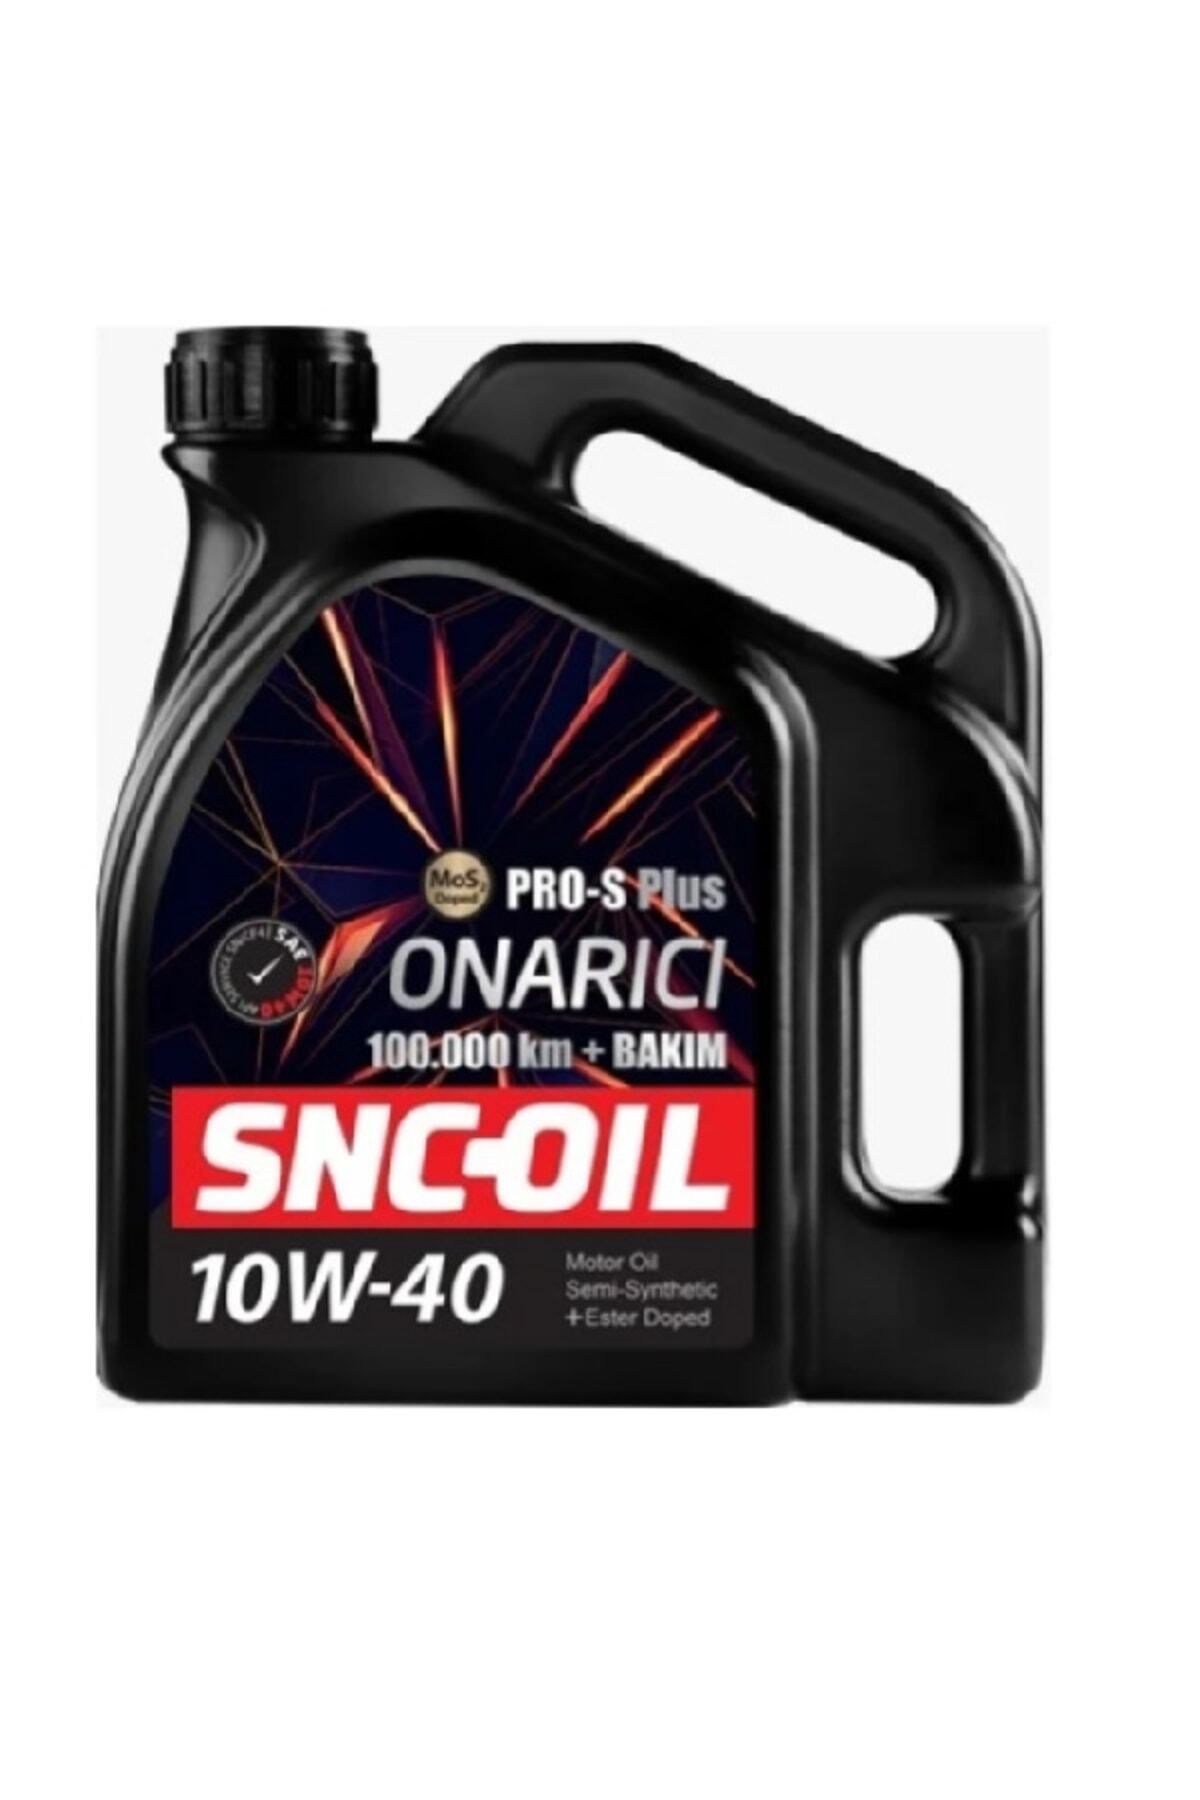 snc -Oil Pro-s Plus Onarıcı 10w/40 4 Lt 100.000 Km Motor Yağı